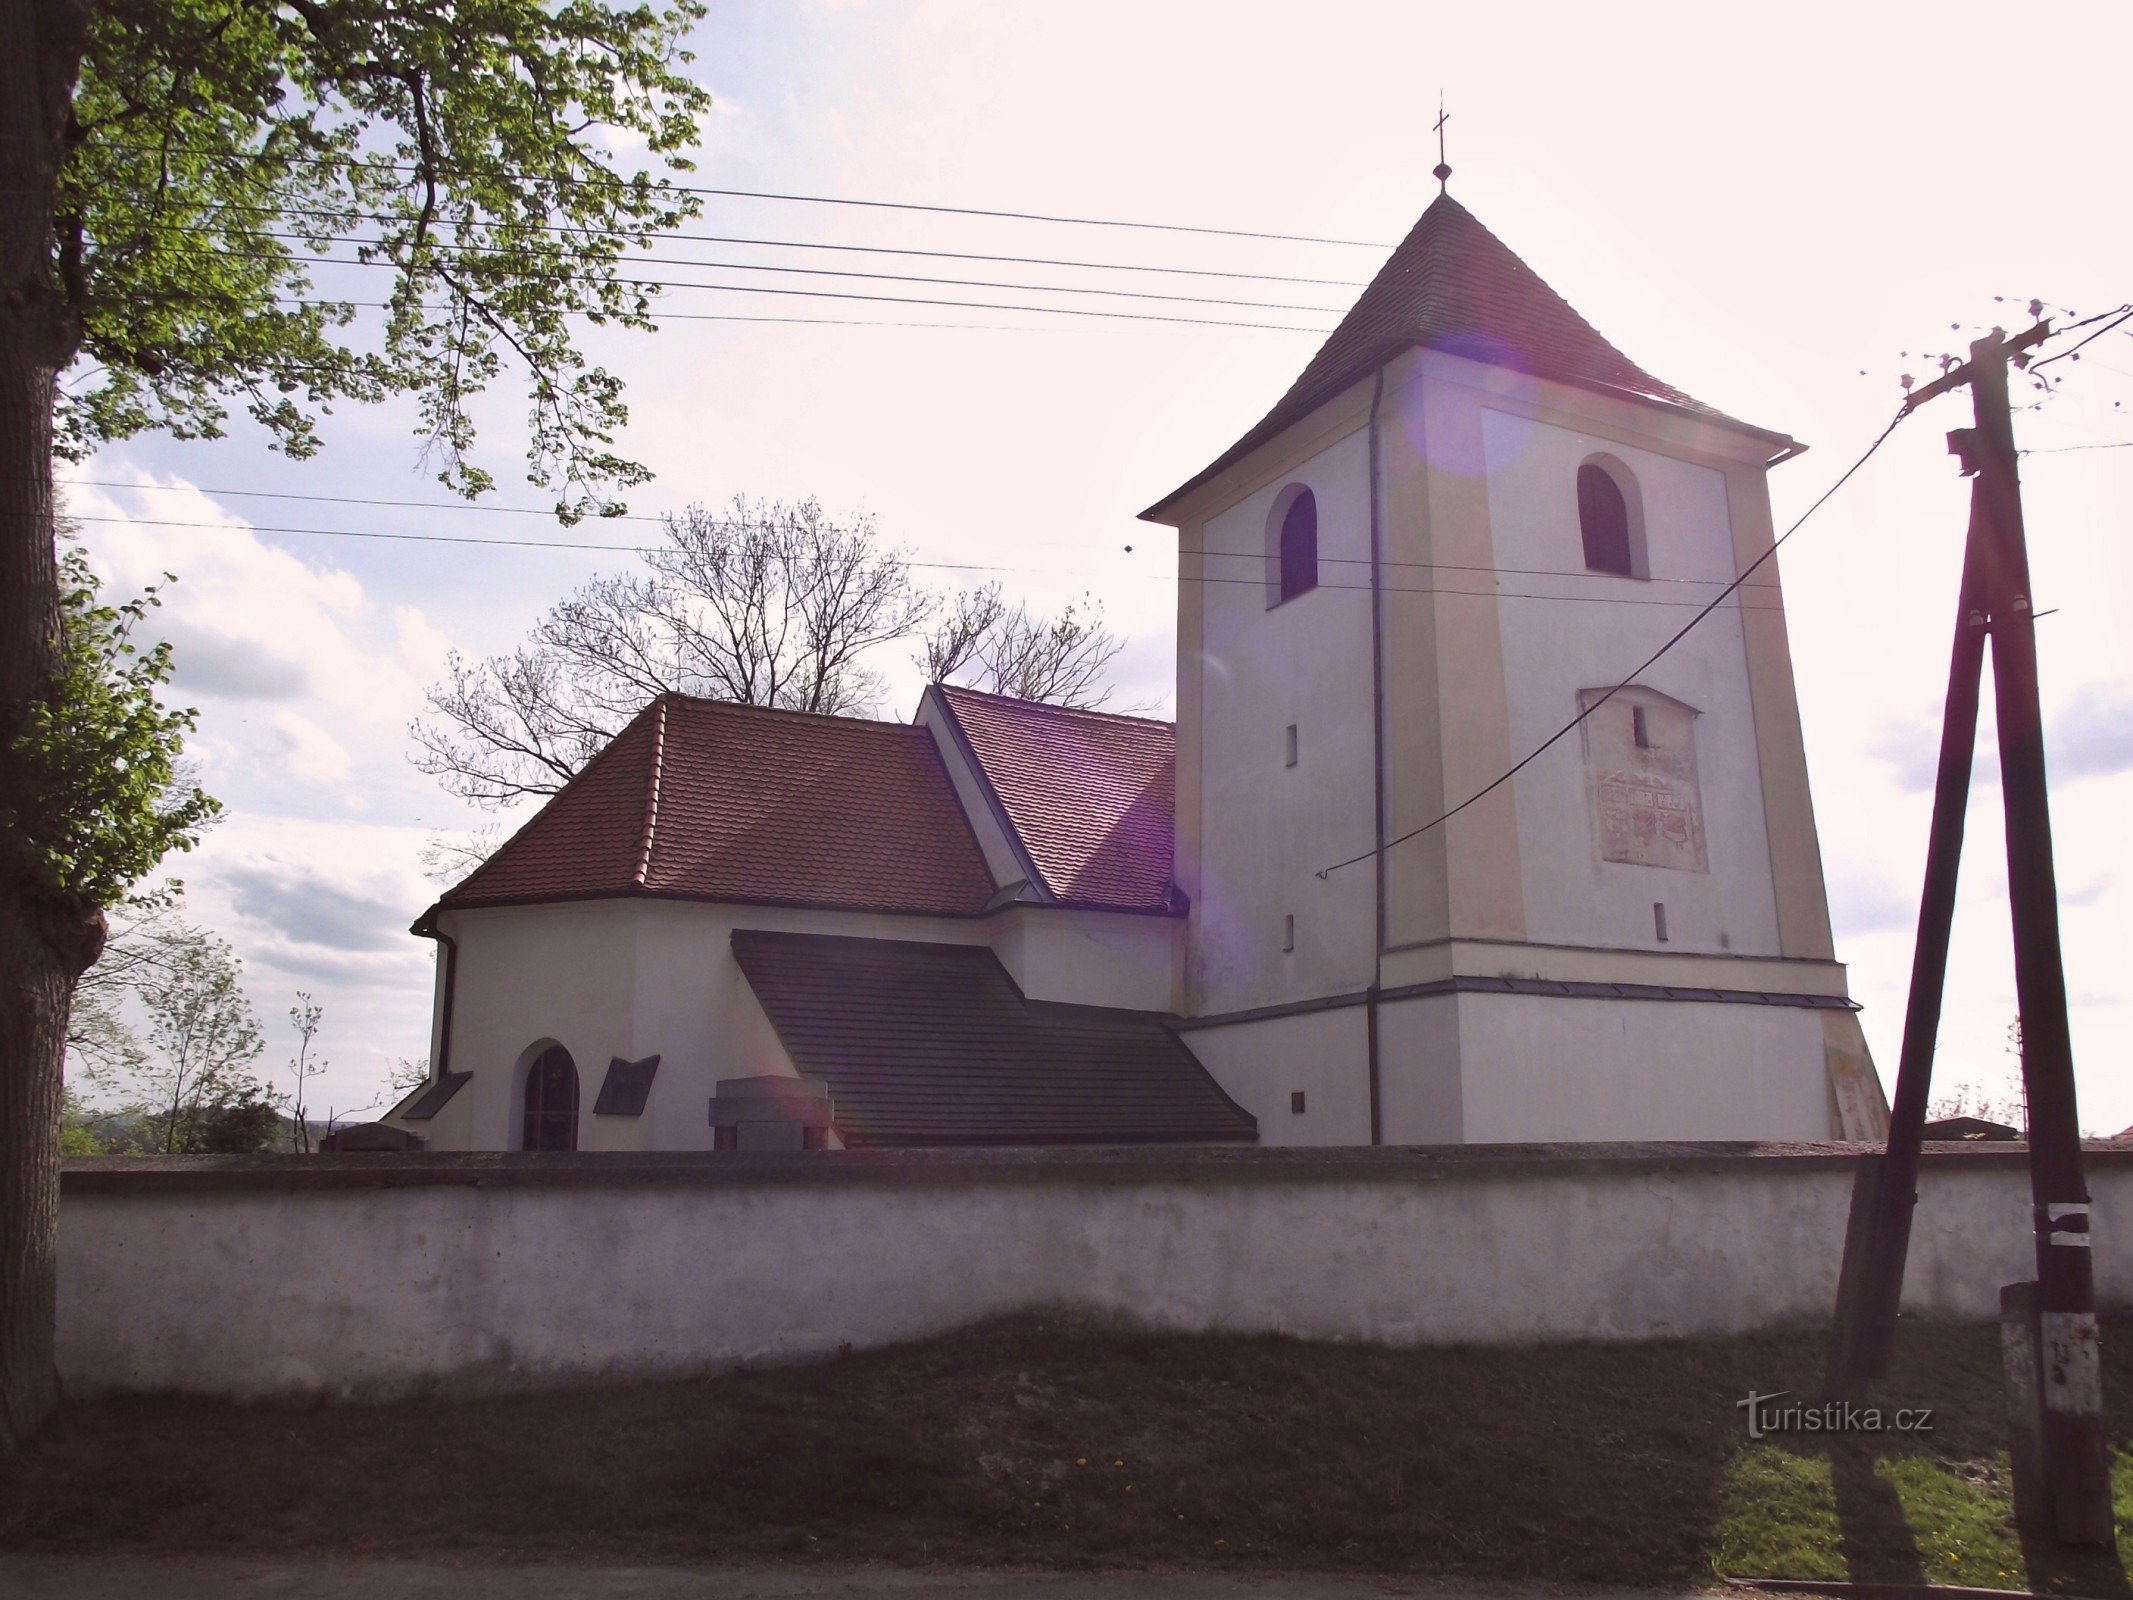 Пералец - церковь св. Иоанн Креститель